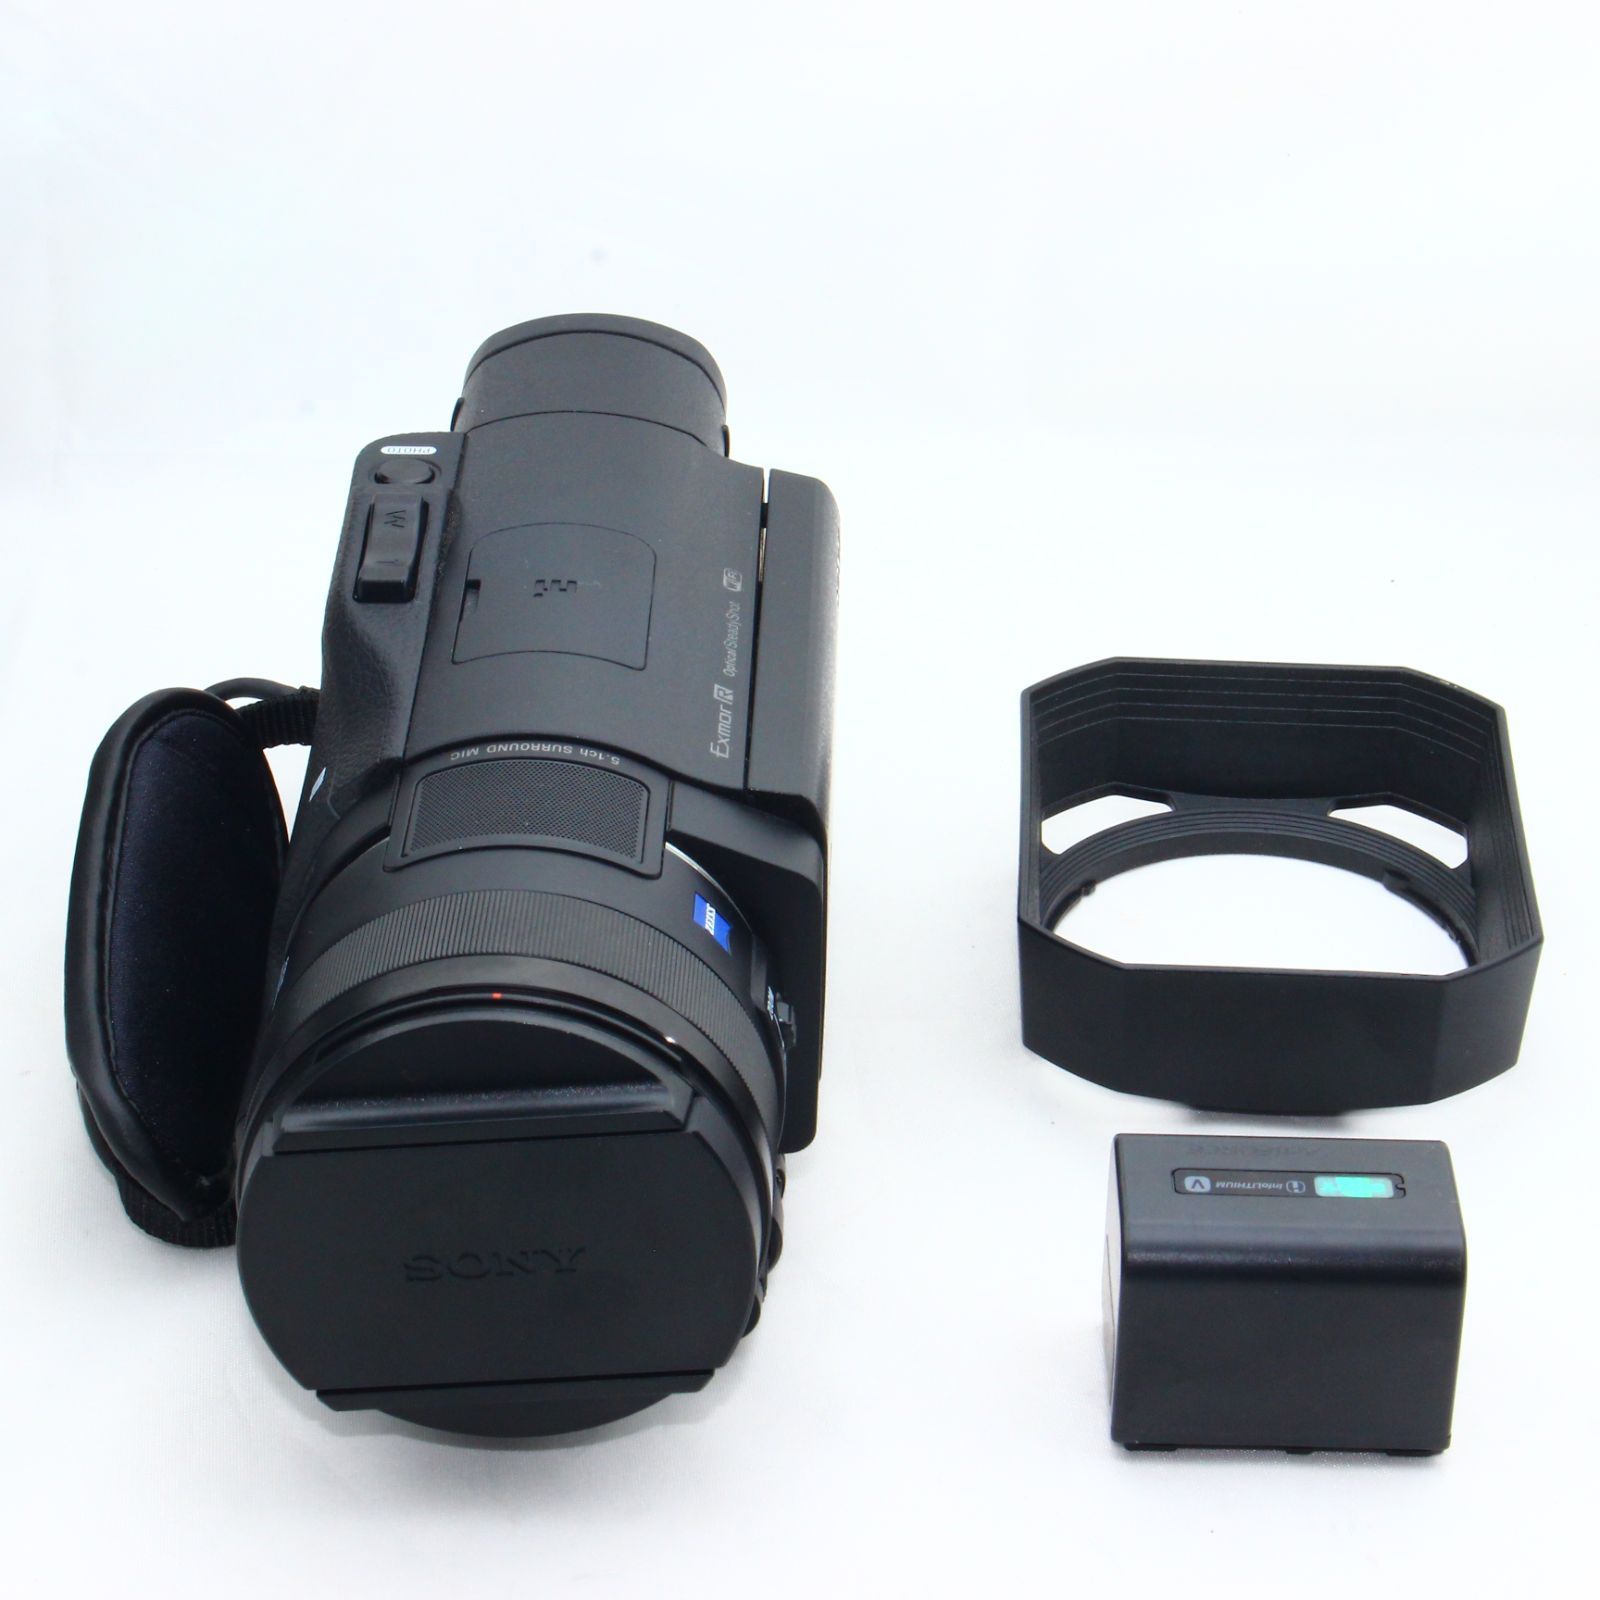 ソニー SONY ビデオカメラ FDR-AX100 4K 光学12倍 ブラック Handycam FDR-AX100 BC - 5